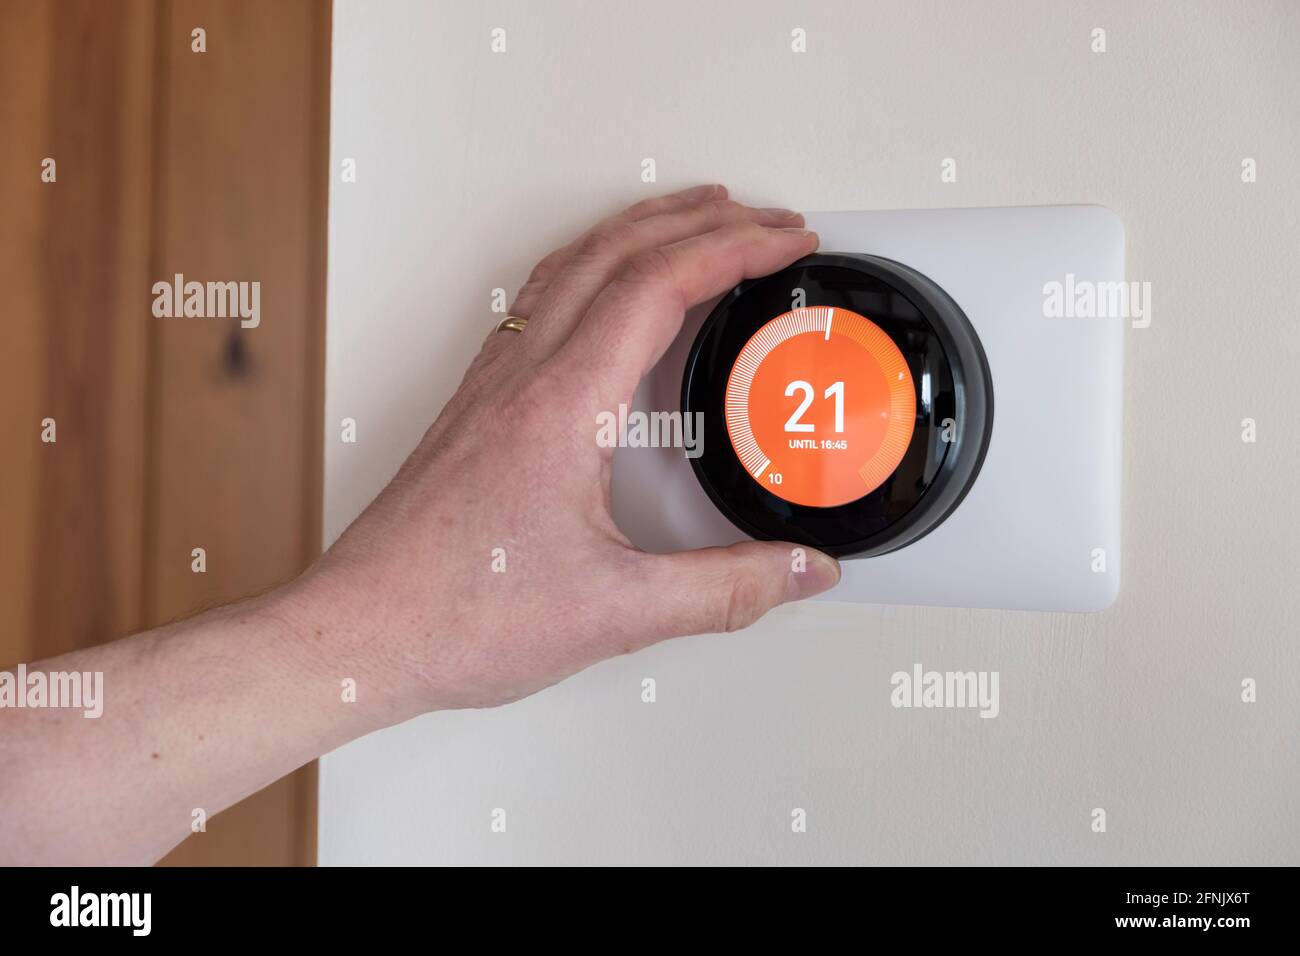 Persona que controla un termostato inteligente en un hogar inteligente conectado Foto de stock